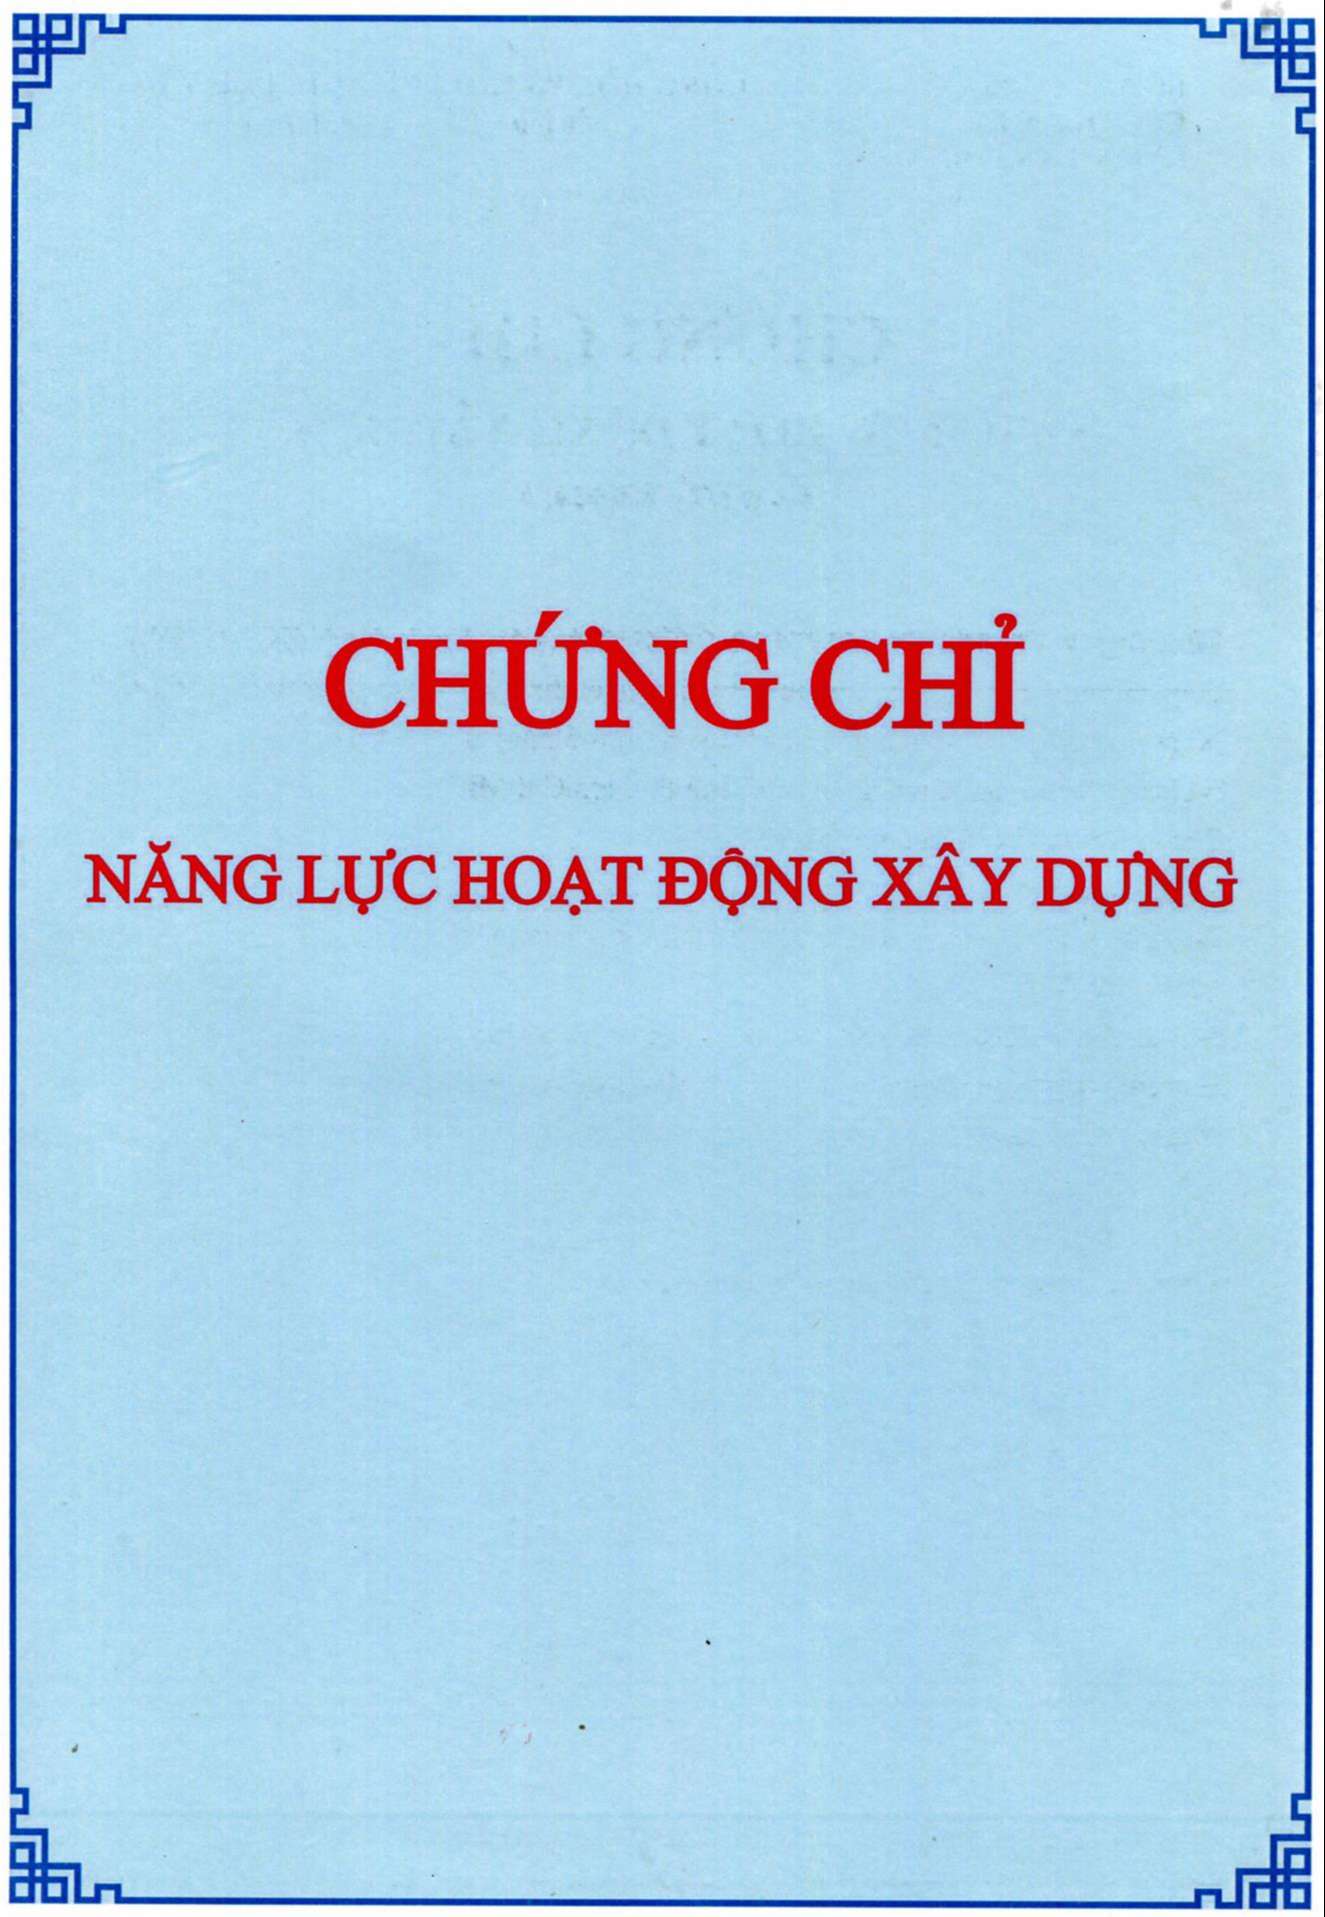 nhan-chung-chi-nang-luc-hoat-dong-xay-dung-hang-i